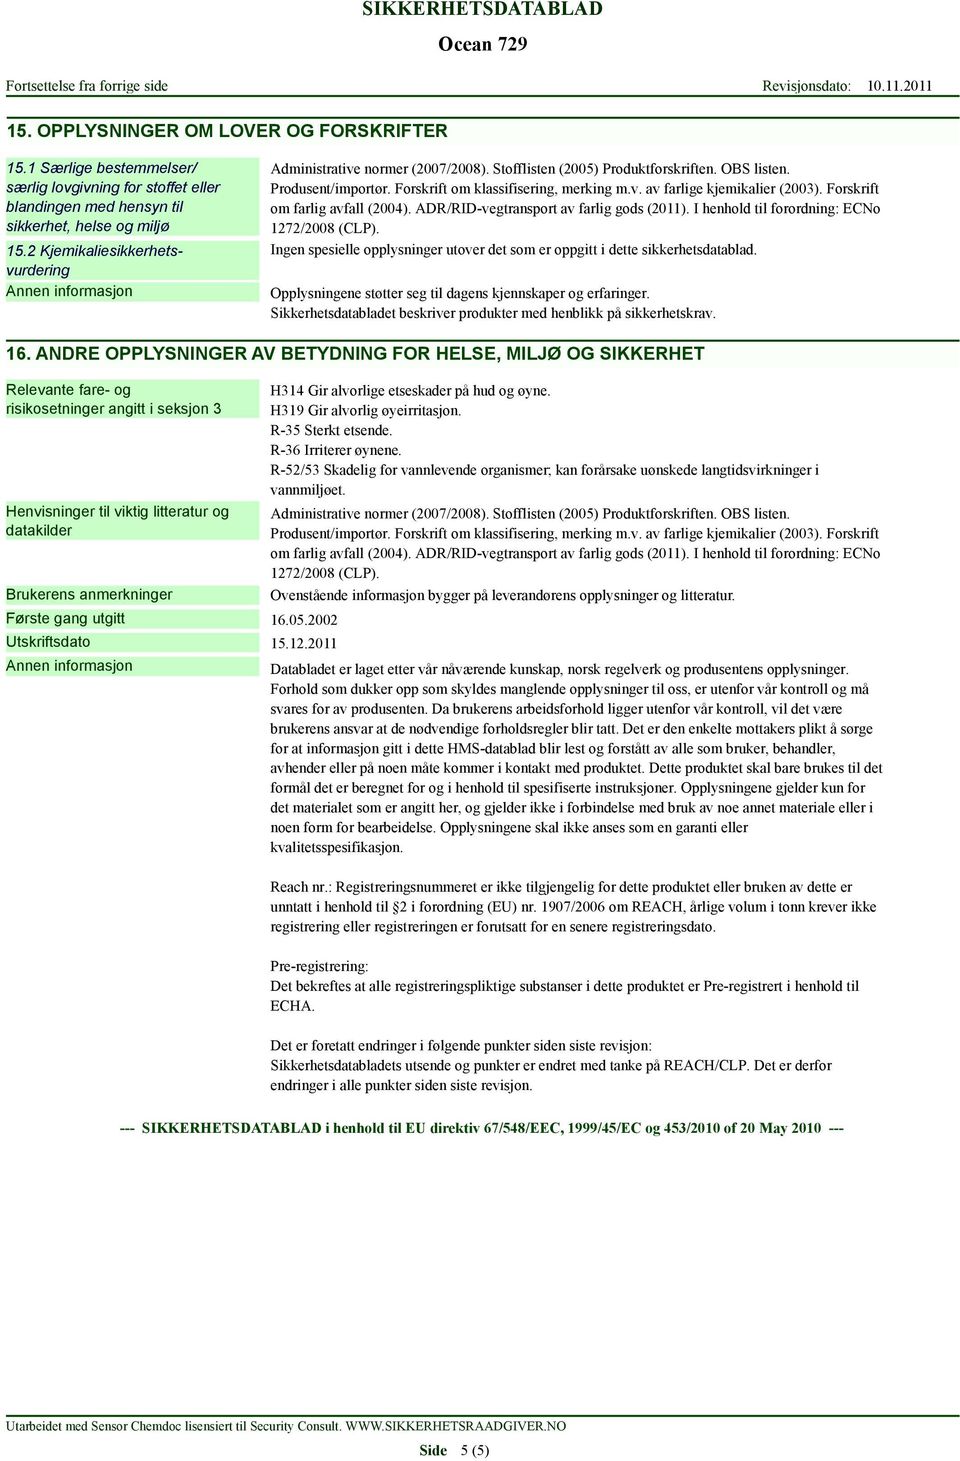 Forskrift om farlig avfall (2004). ADR/RID-vegtransport av farlig gods (2011). I henhold til forordning: ECNo 1272/2008 (CLP).